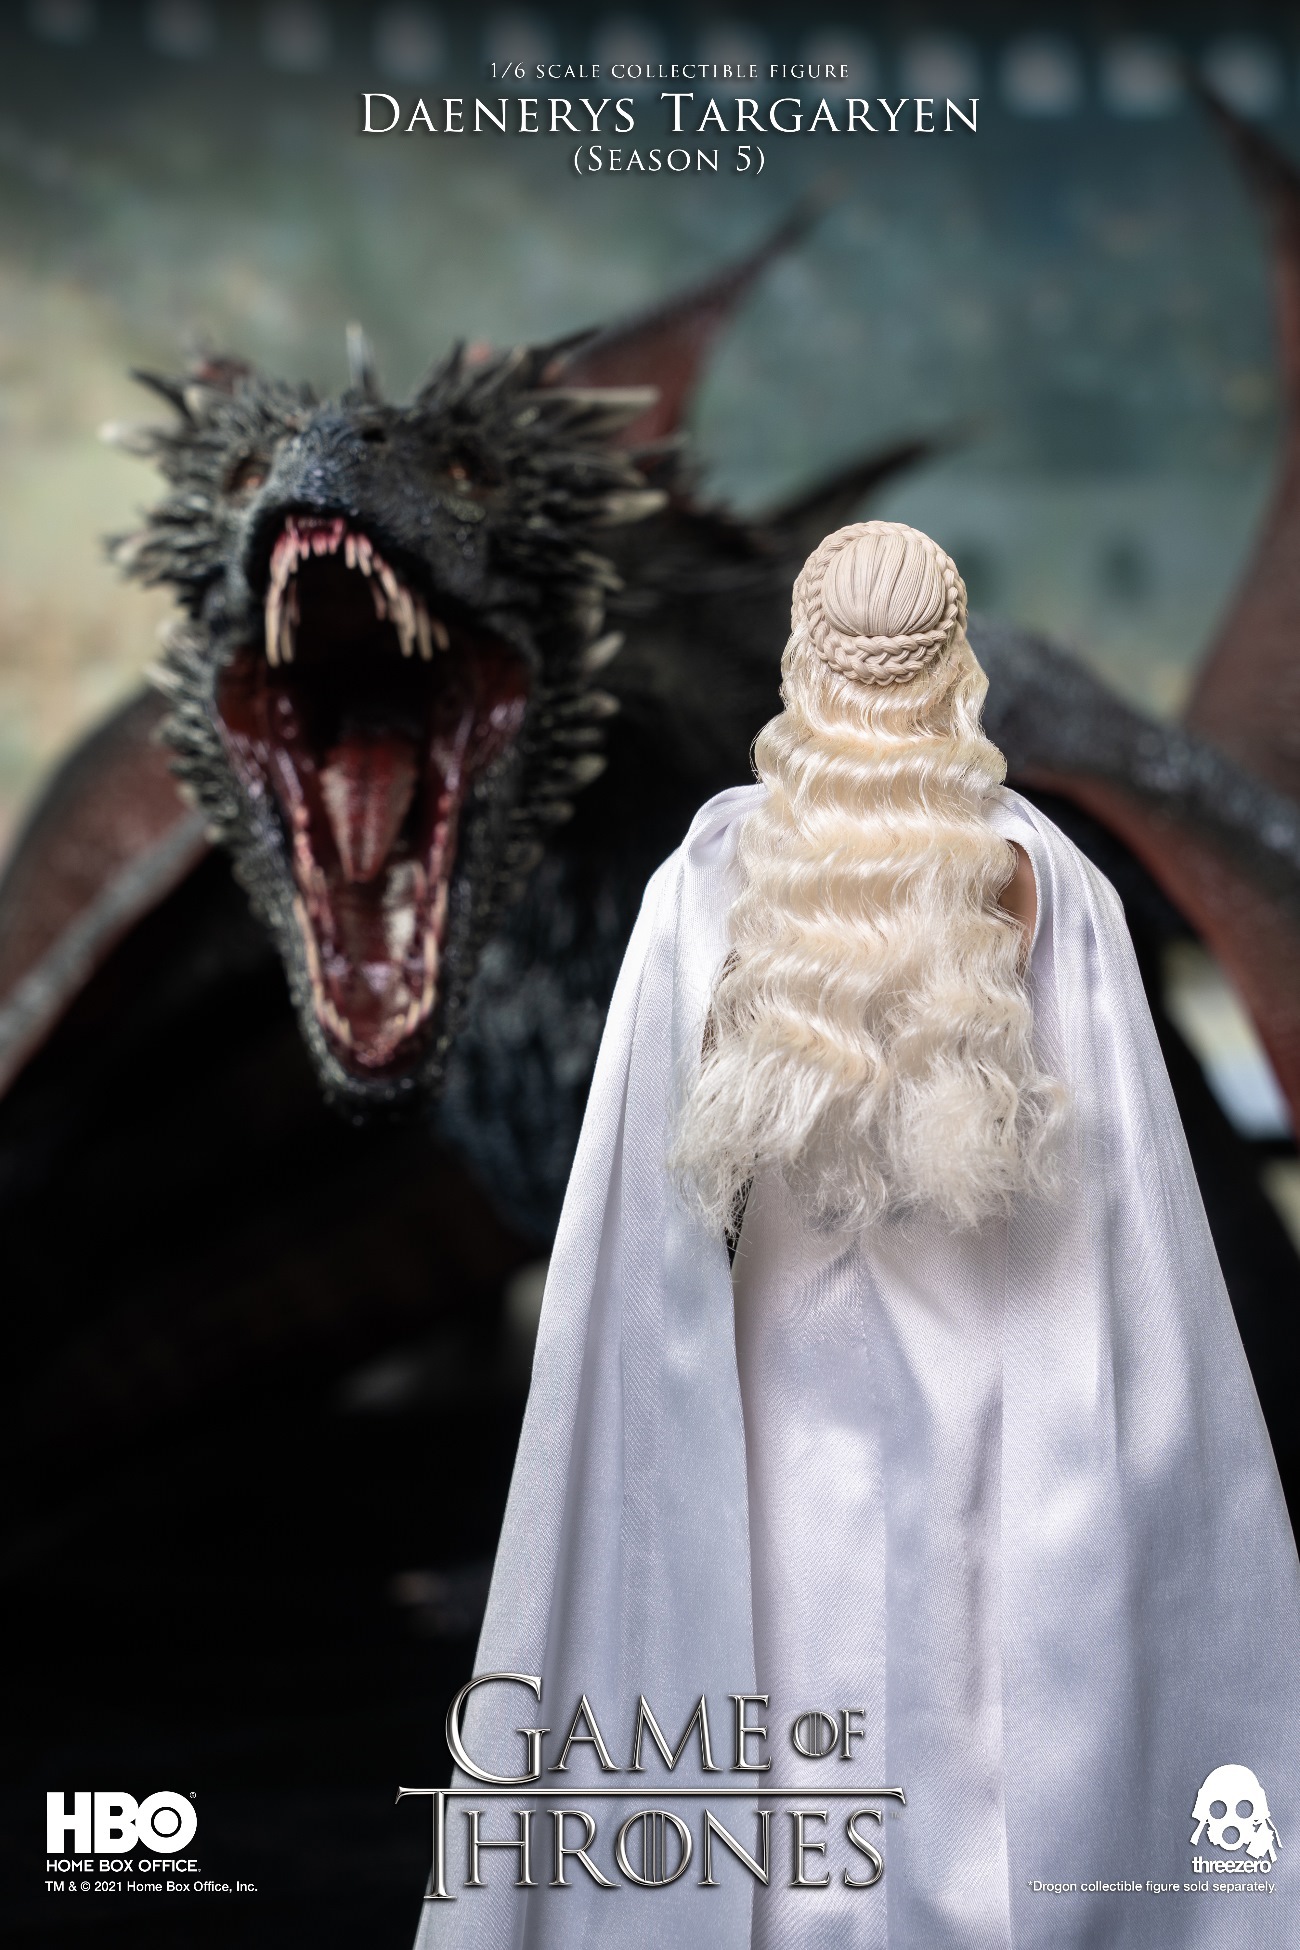 GAME OF THRONES on Instagram: Daenerys Targaryen 🐲🔥👑 